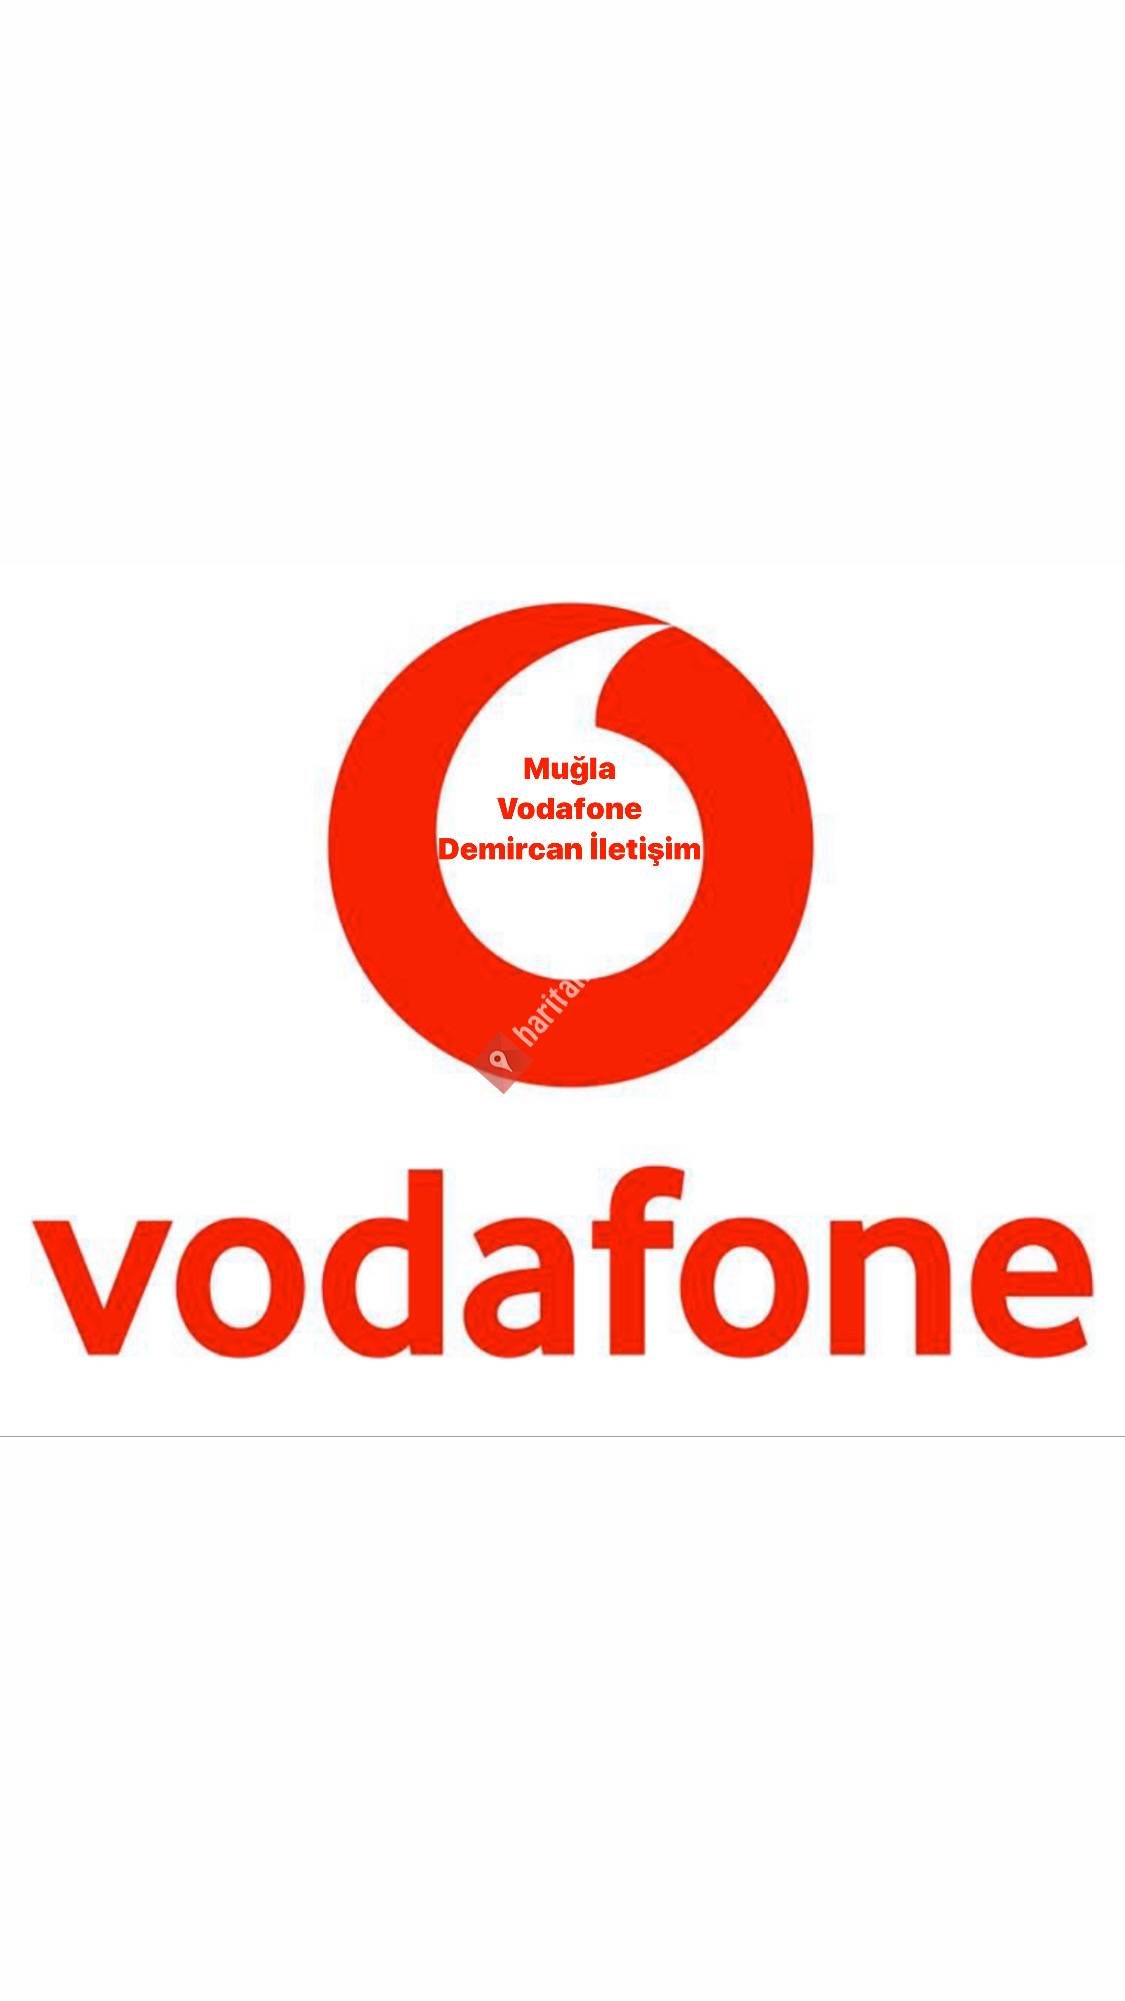 Vodafone Demircan İletişim Muğla 